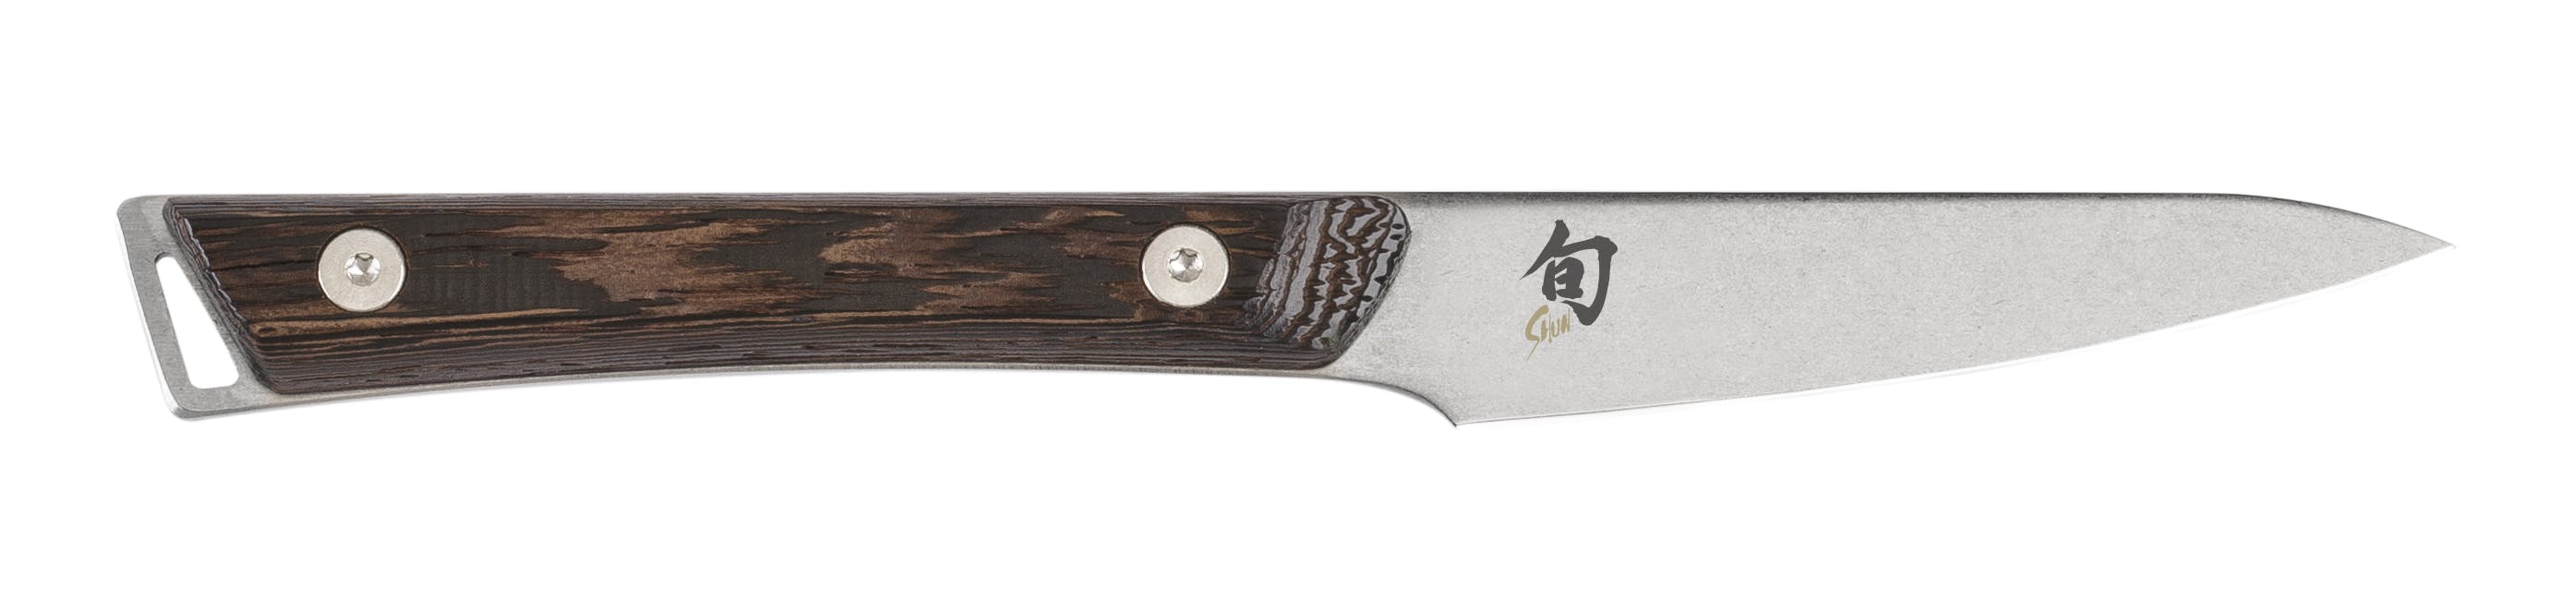 Shun Kanso Paring Knife 3.5"